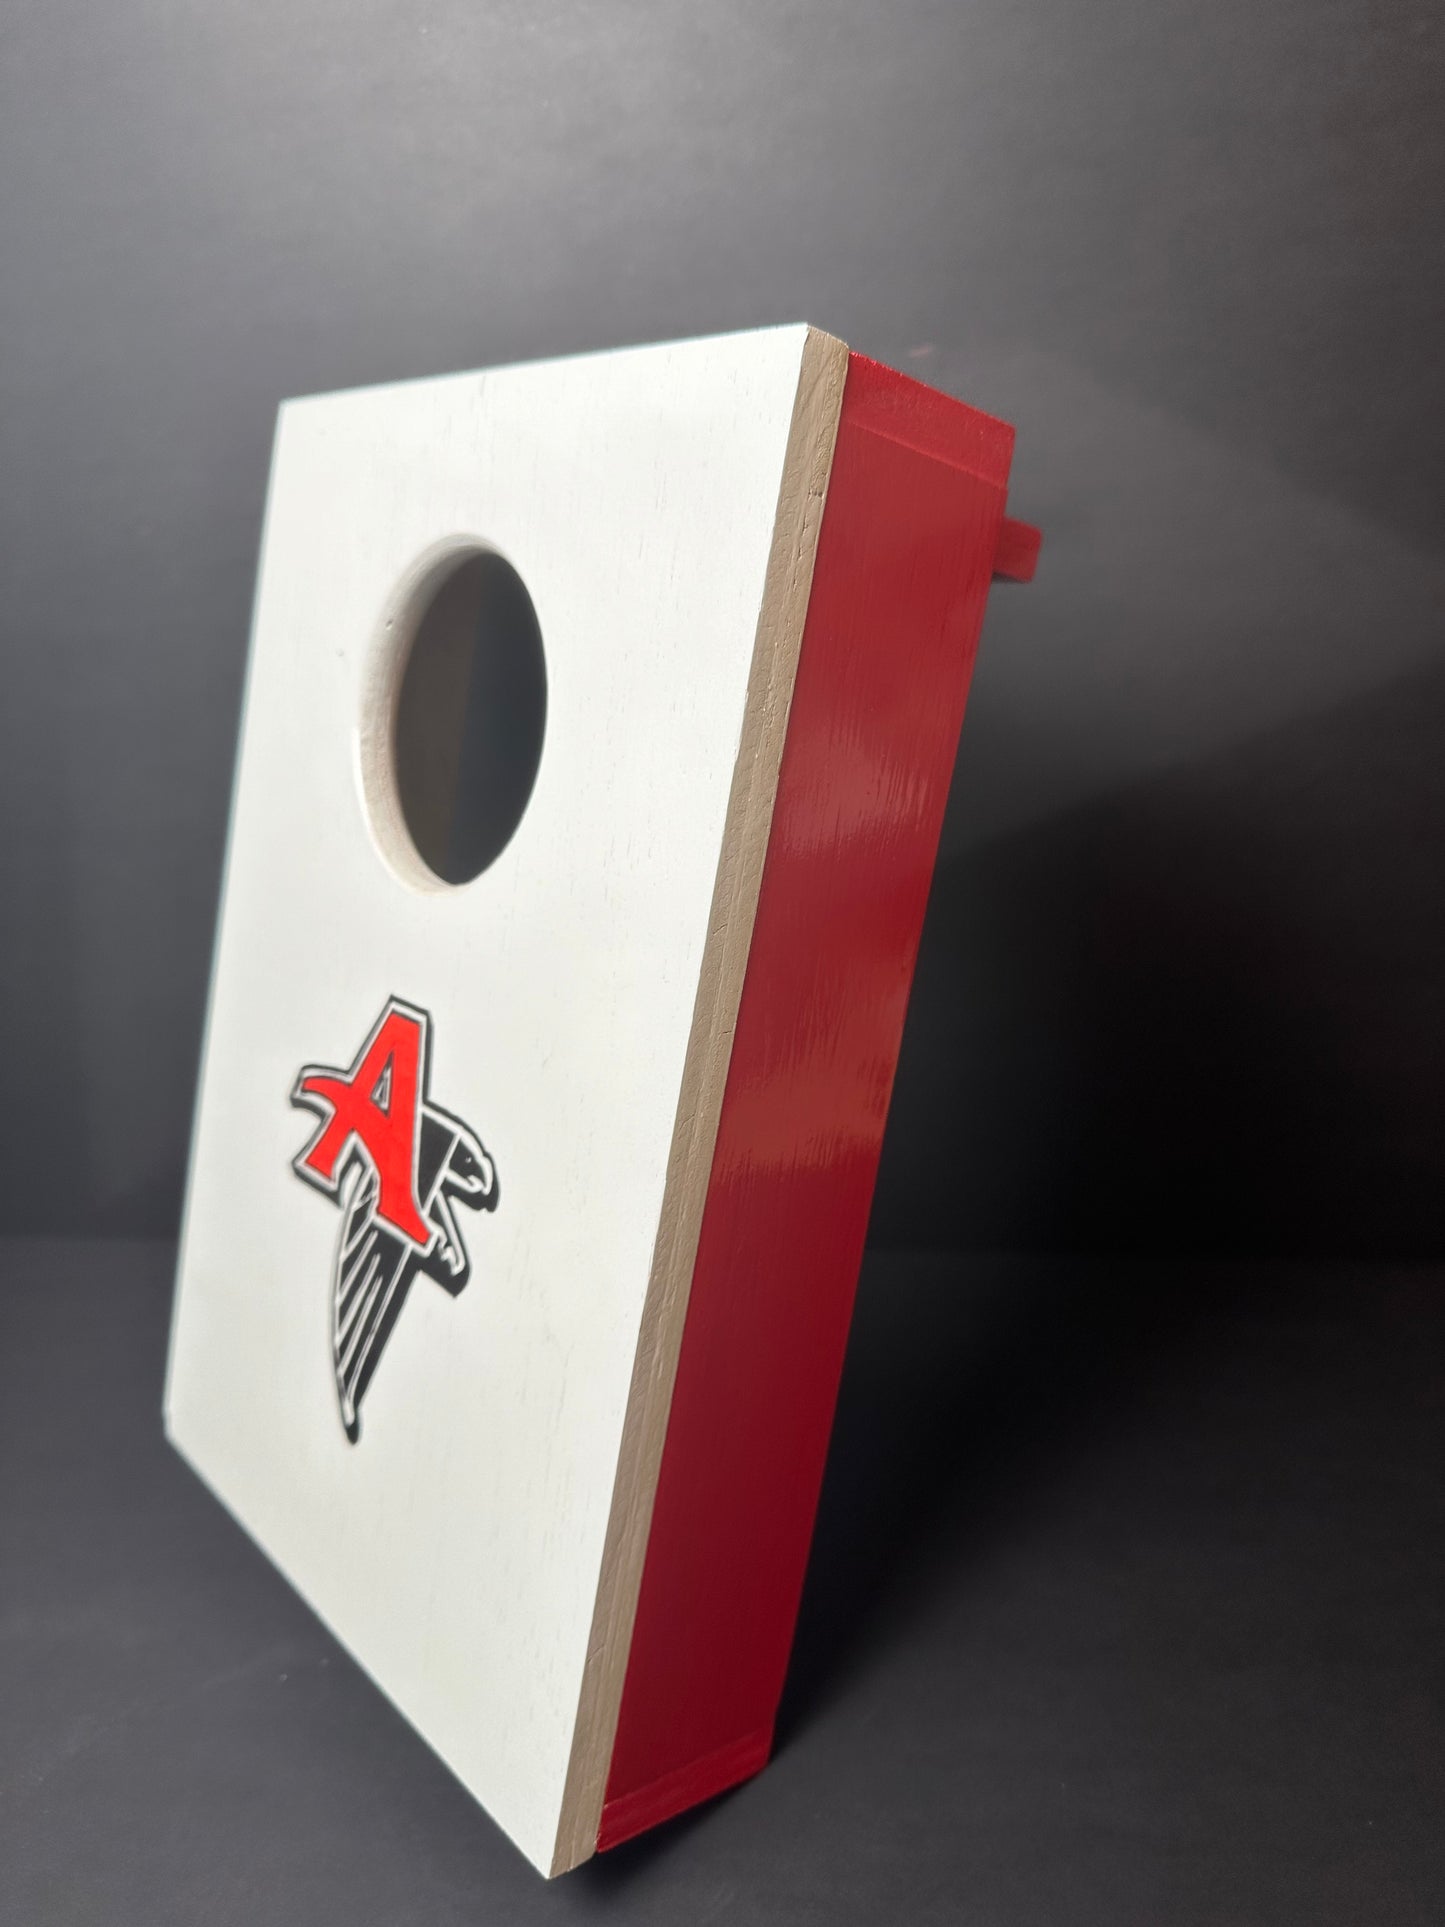 Atlanta Falcons Tabletop Cornhole Board Set